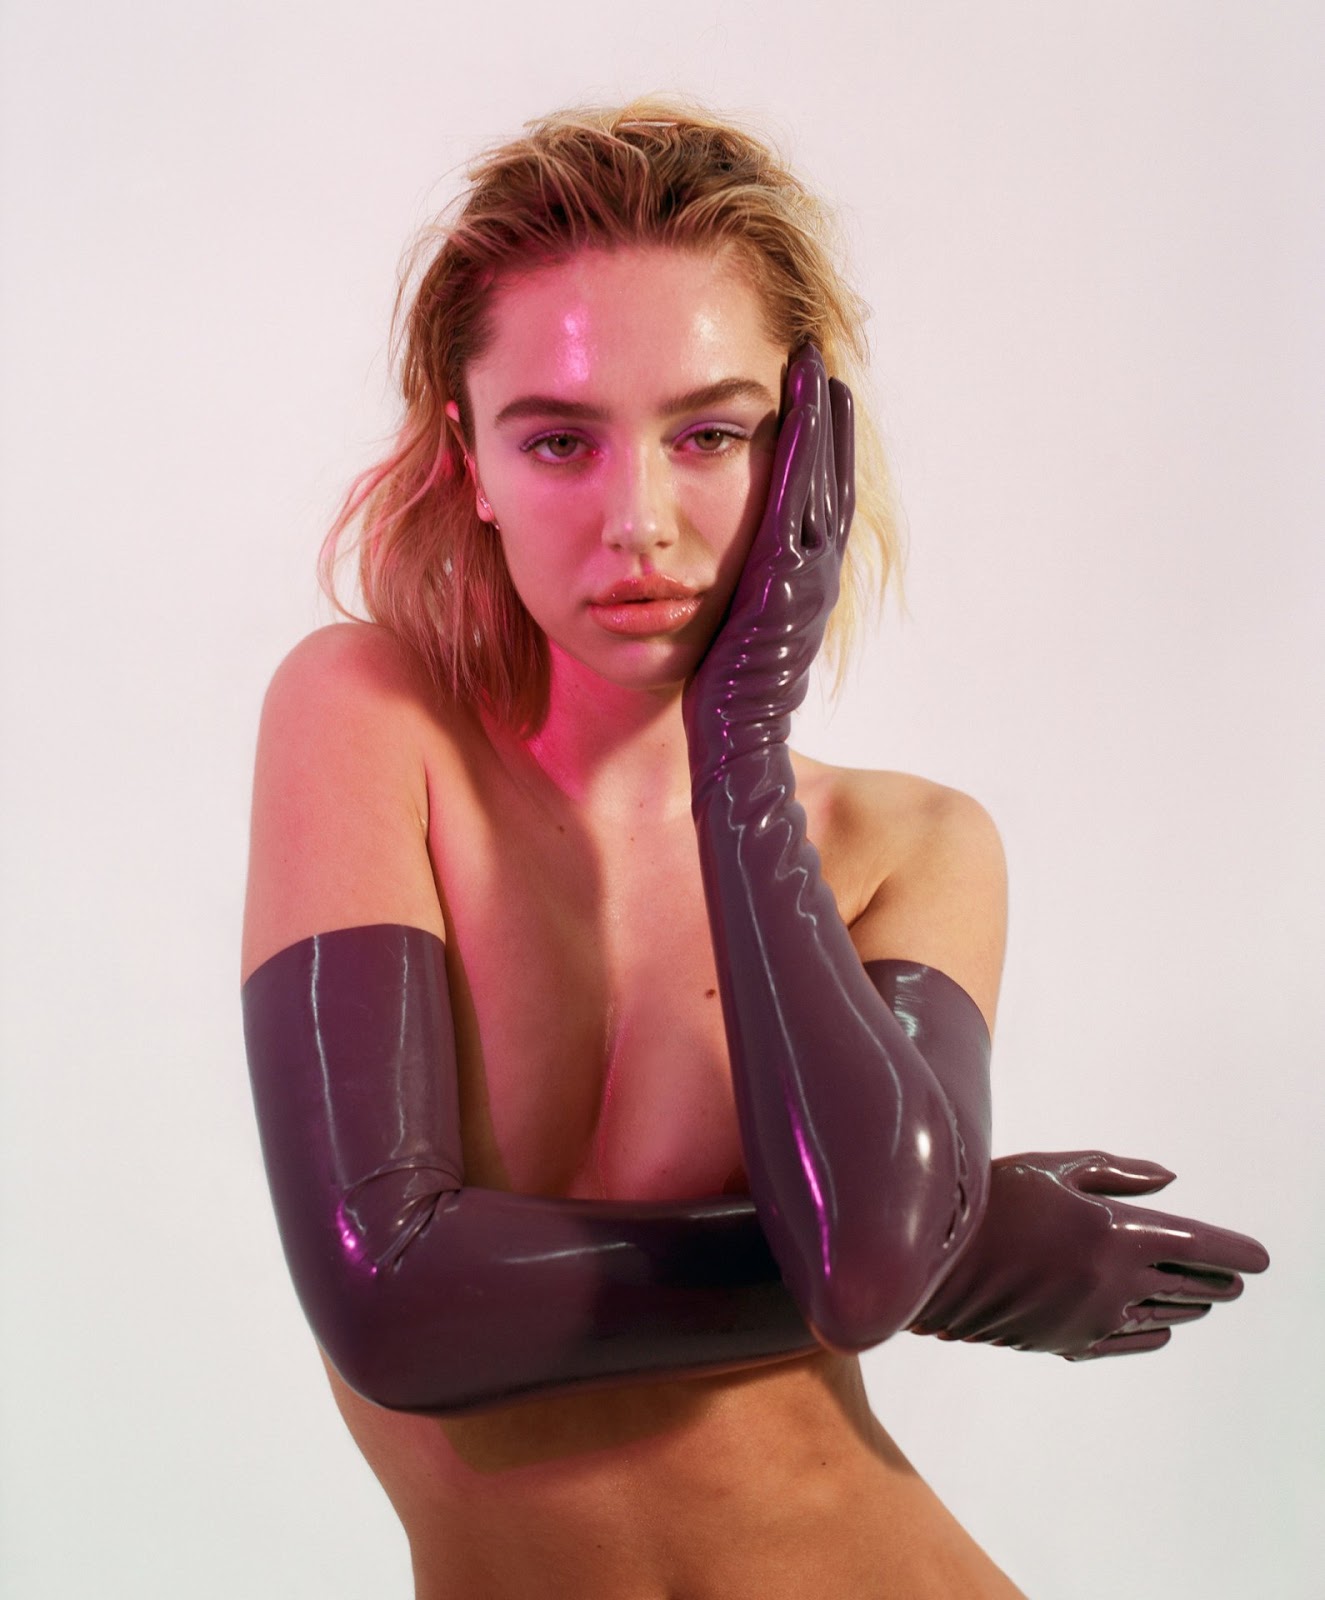 Delilah Belle Hamlin topless model photoshoot